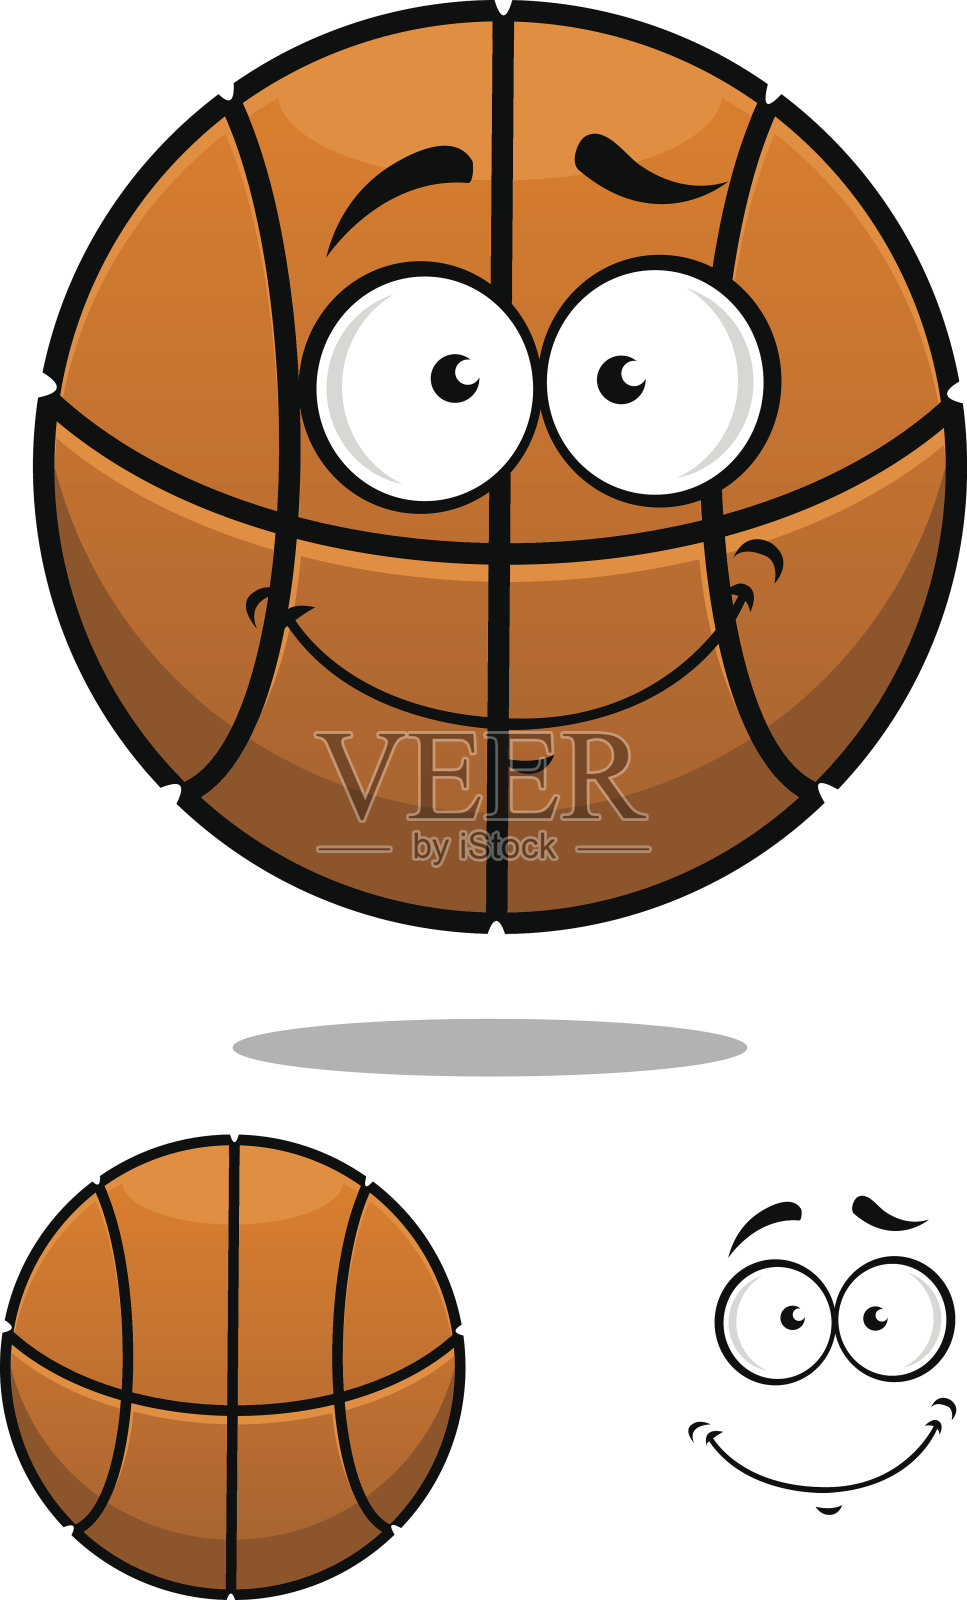 有一张可爱脸的篮球角色插画图片素材